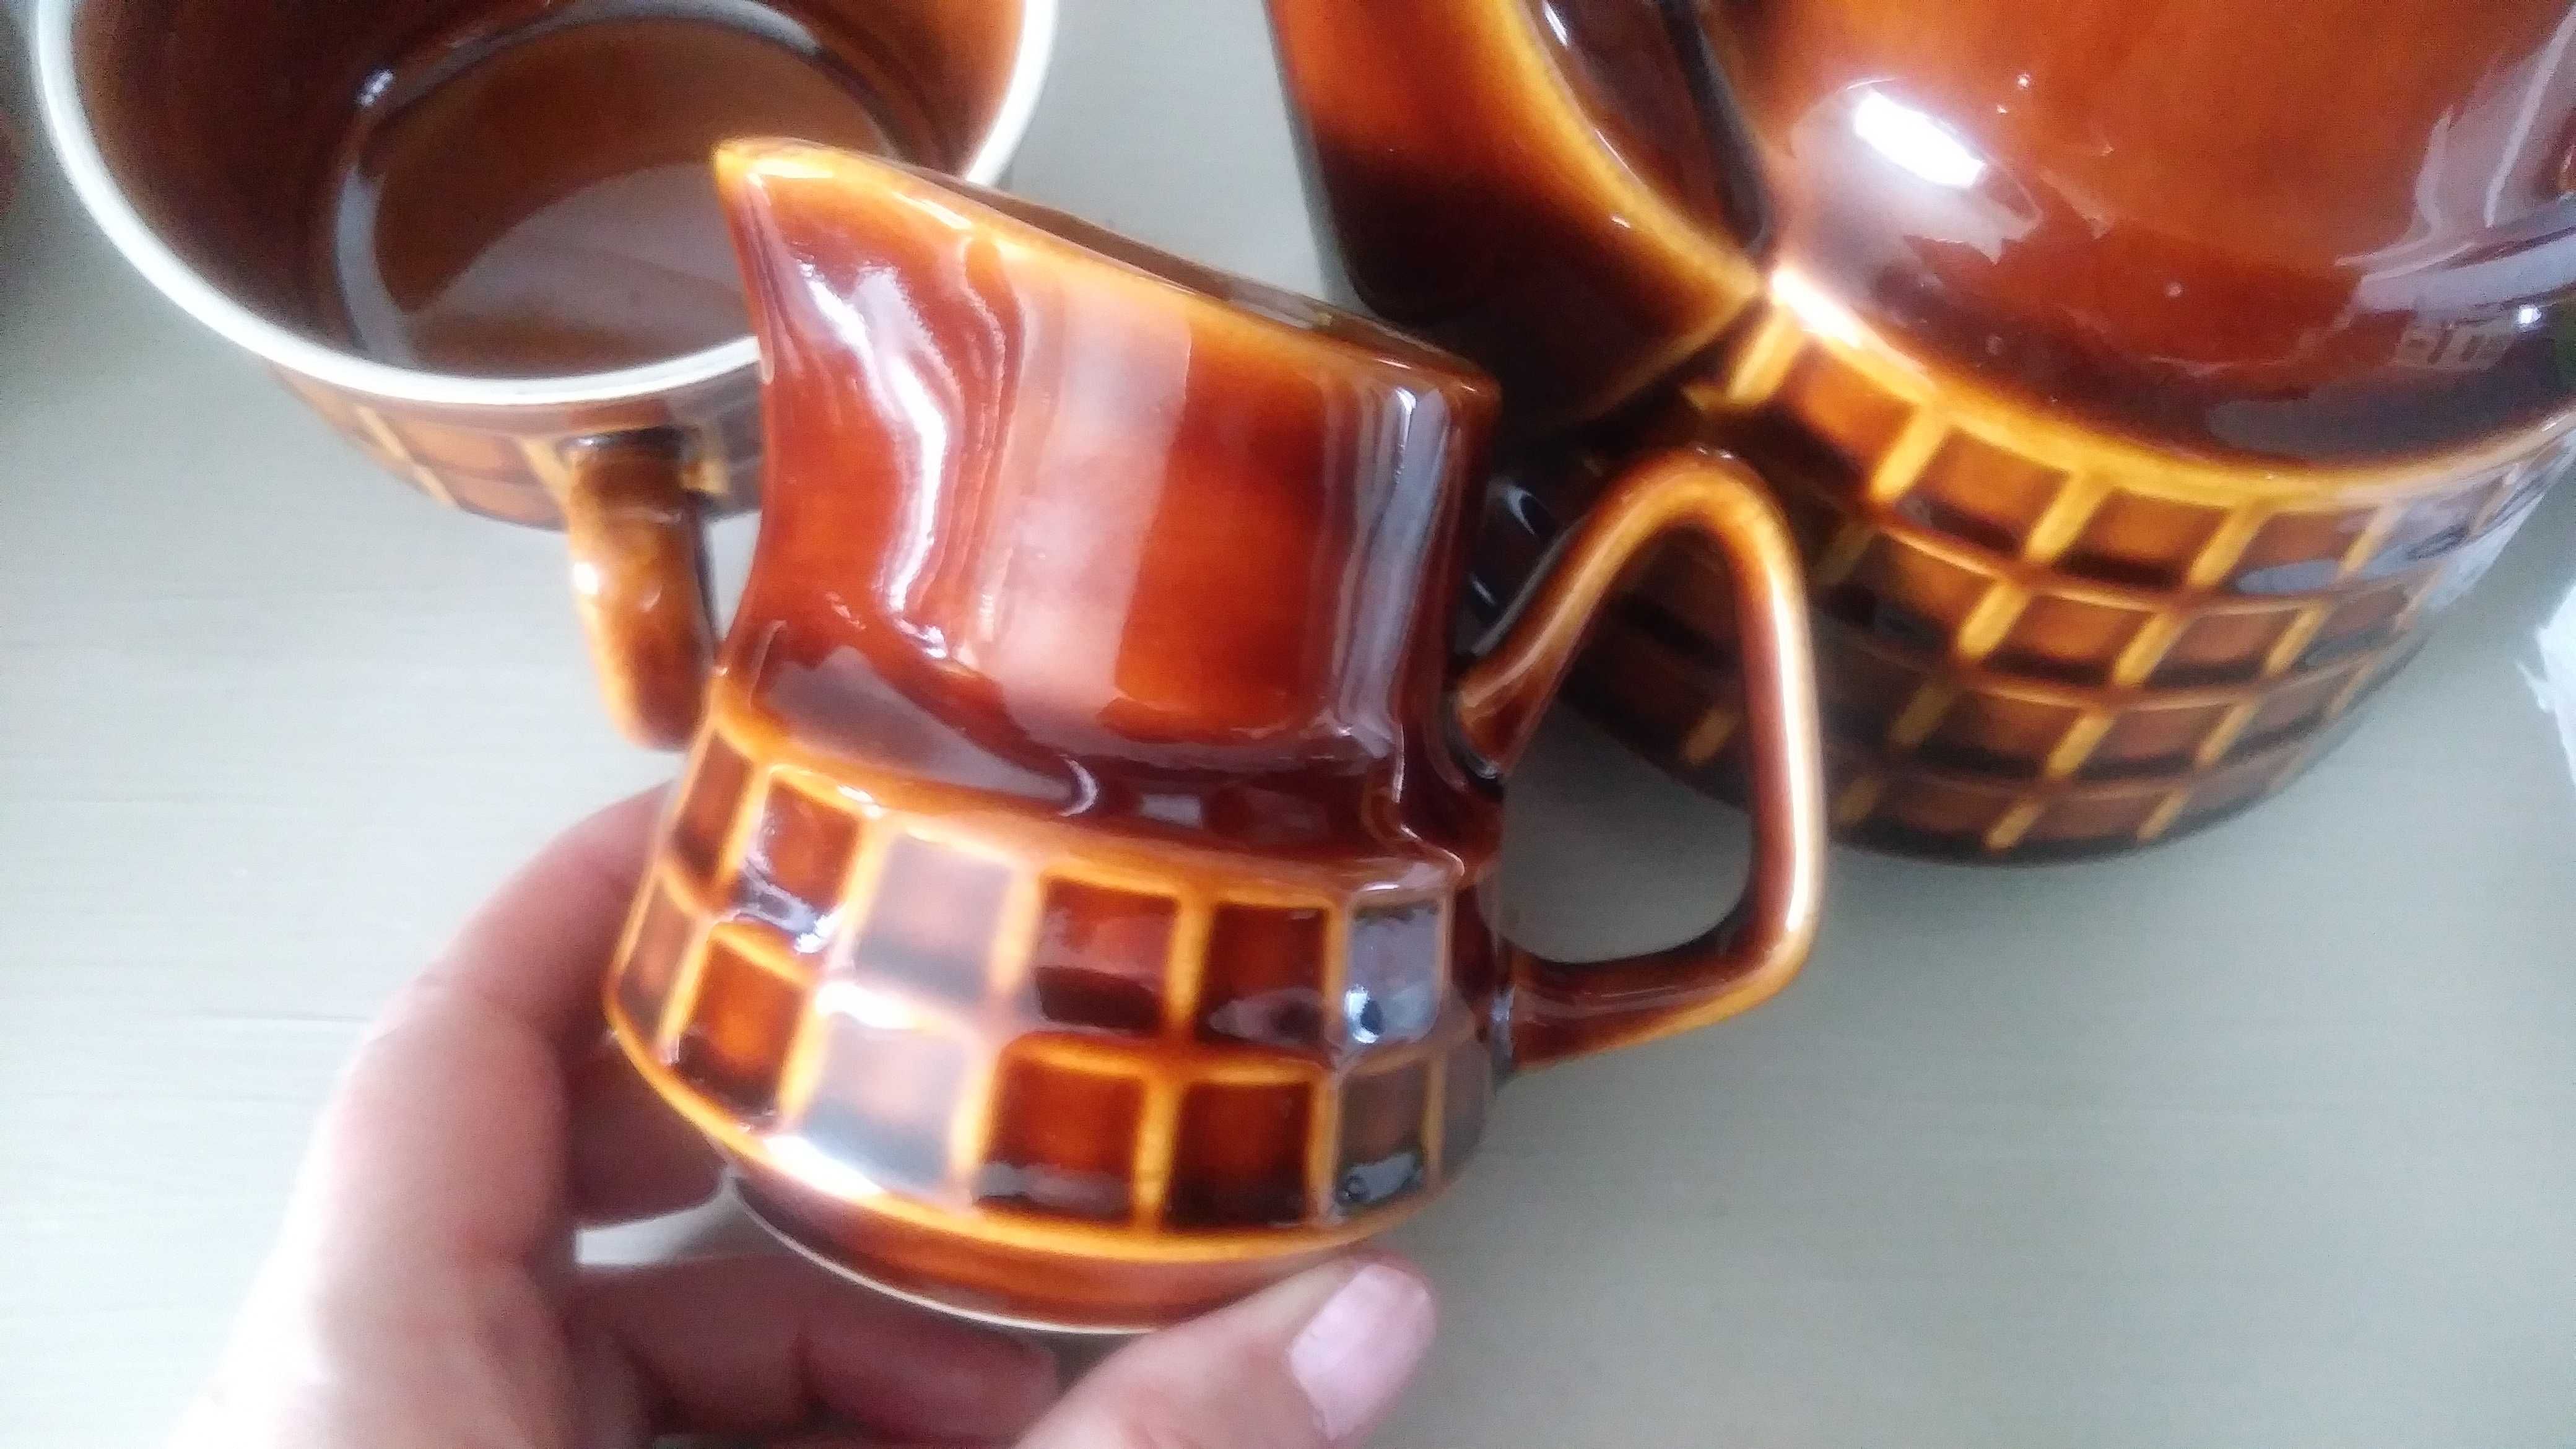 Porcelit Pruszków kratka serwis do kawy herbaty PRL ideal